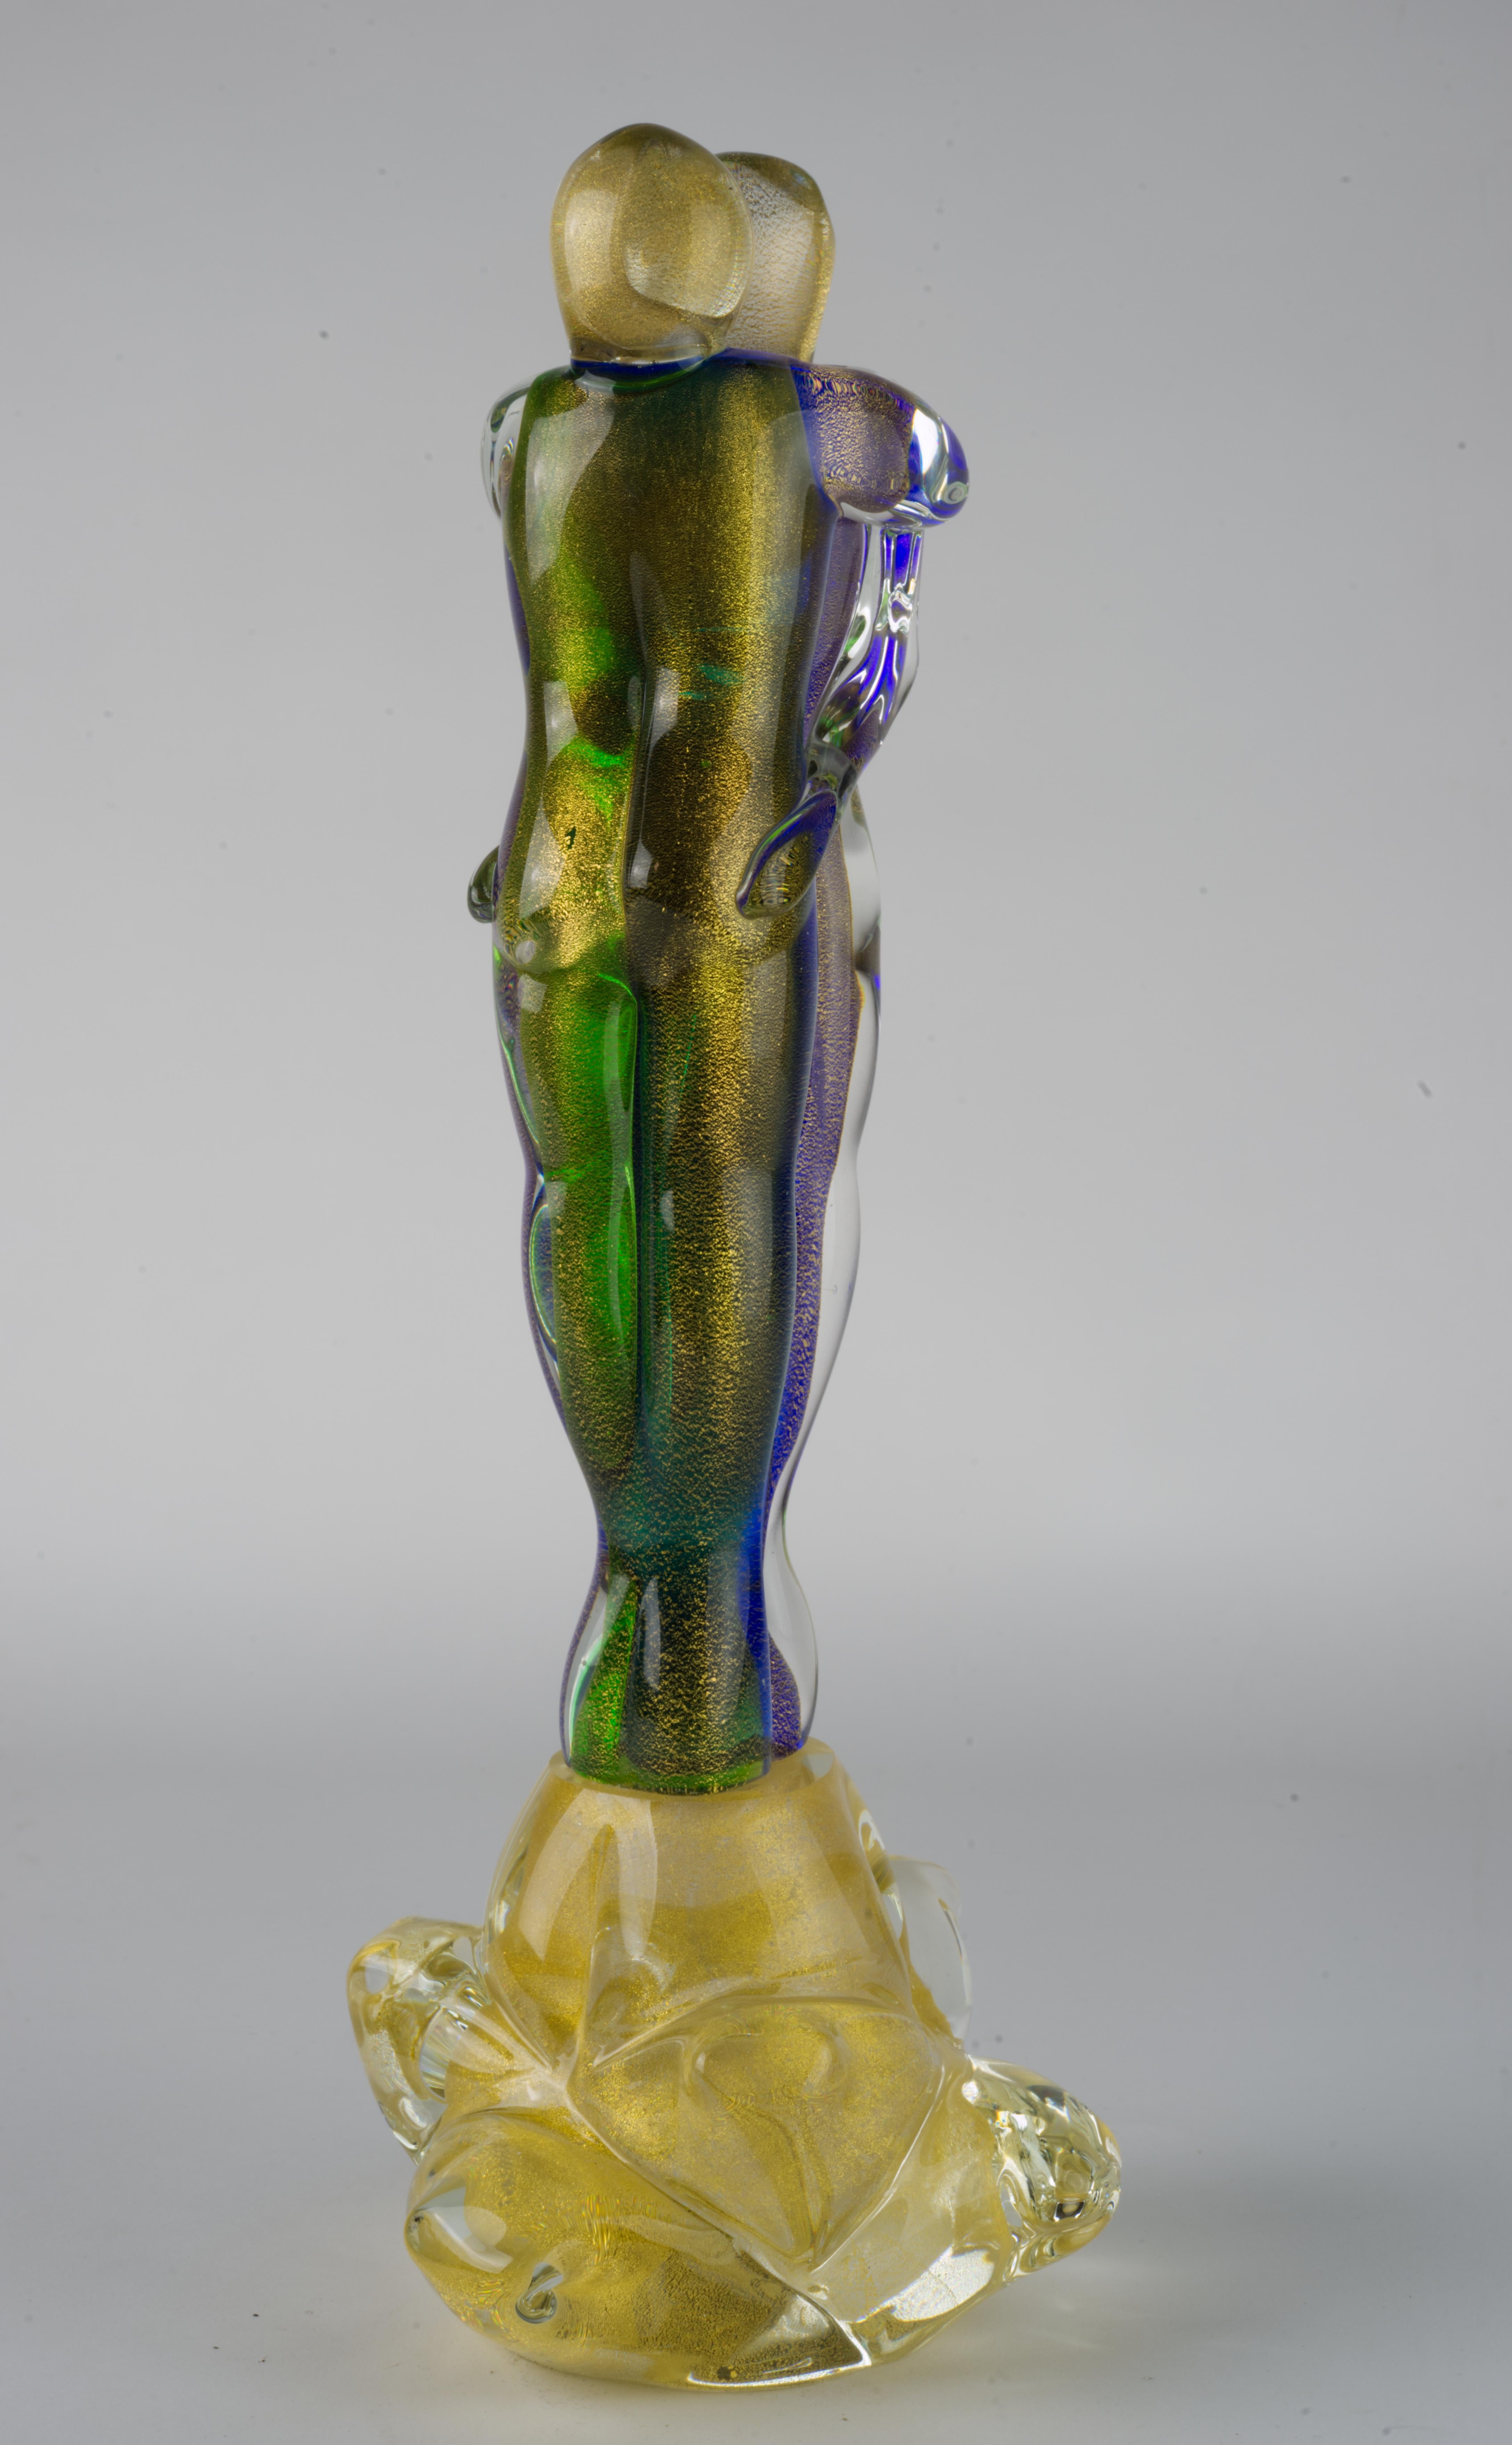 Sculpture abstraite en verre de Murano représentant deux amoureux enlacés, réalisée en verre vert, violet et transparent avec des inclusions de paillettes d'or, enveloppée dans du verre transparent selon la technique sommerso. Les deux personnages